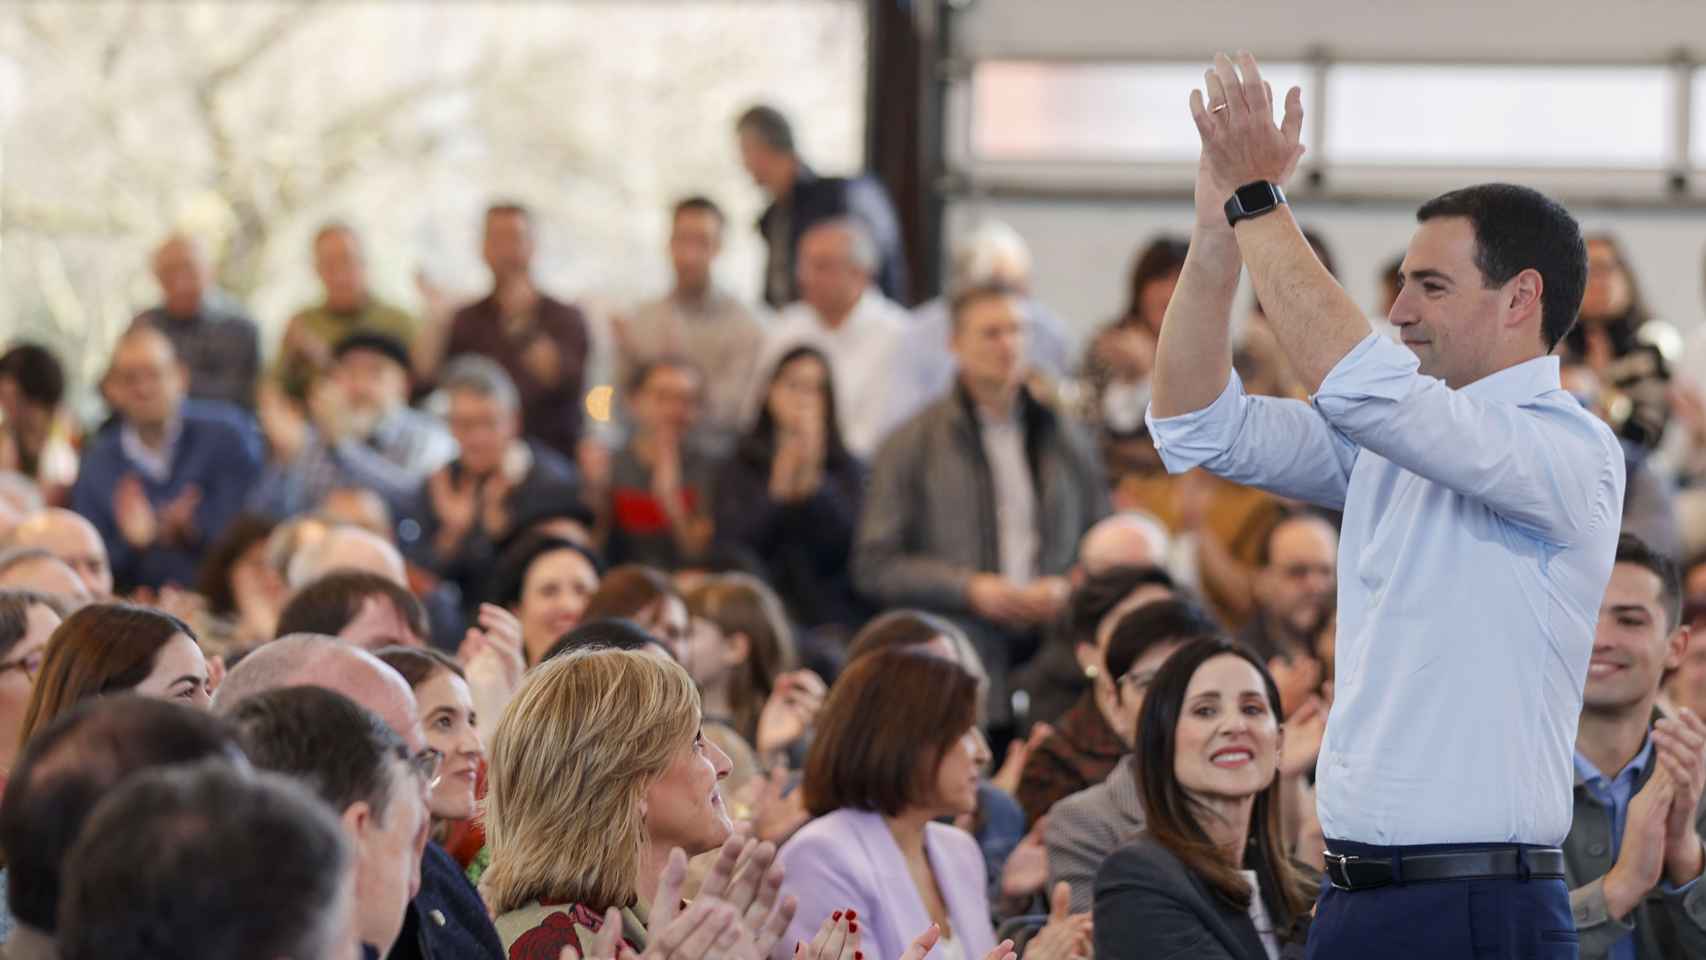 Imanol Pradales candidato a lehendakari, durante la Asamblea Nacional del PNV este sábado, que culmina la renovación anunciada en sus listas electorales al Parlamento Vasco en las próximas elecciones vascas / Luis Tejido - EFE